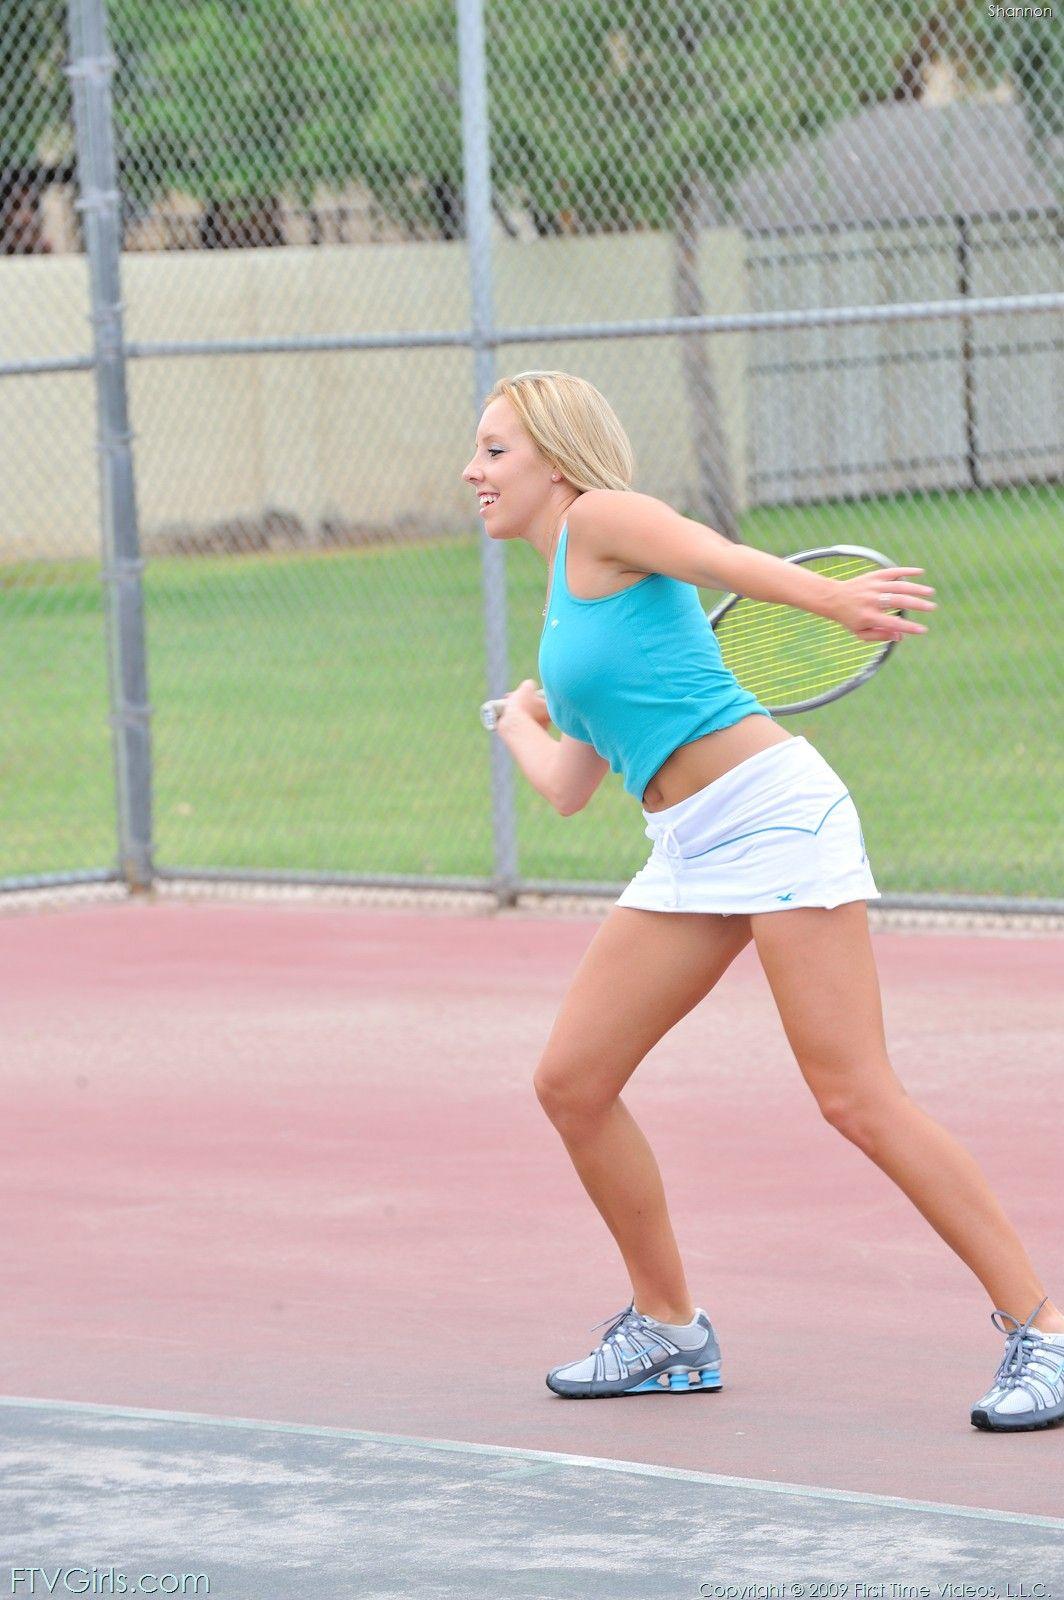 Bilder von Shannon, die eine unglaubliche Partie Tennis spielt
 #59959539